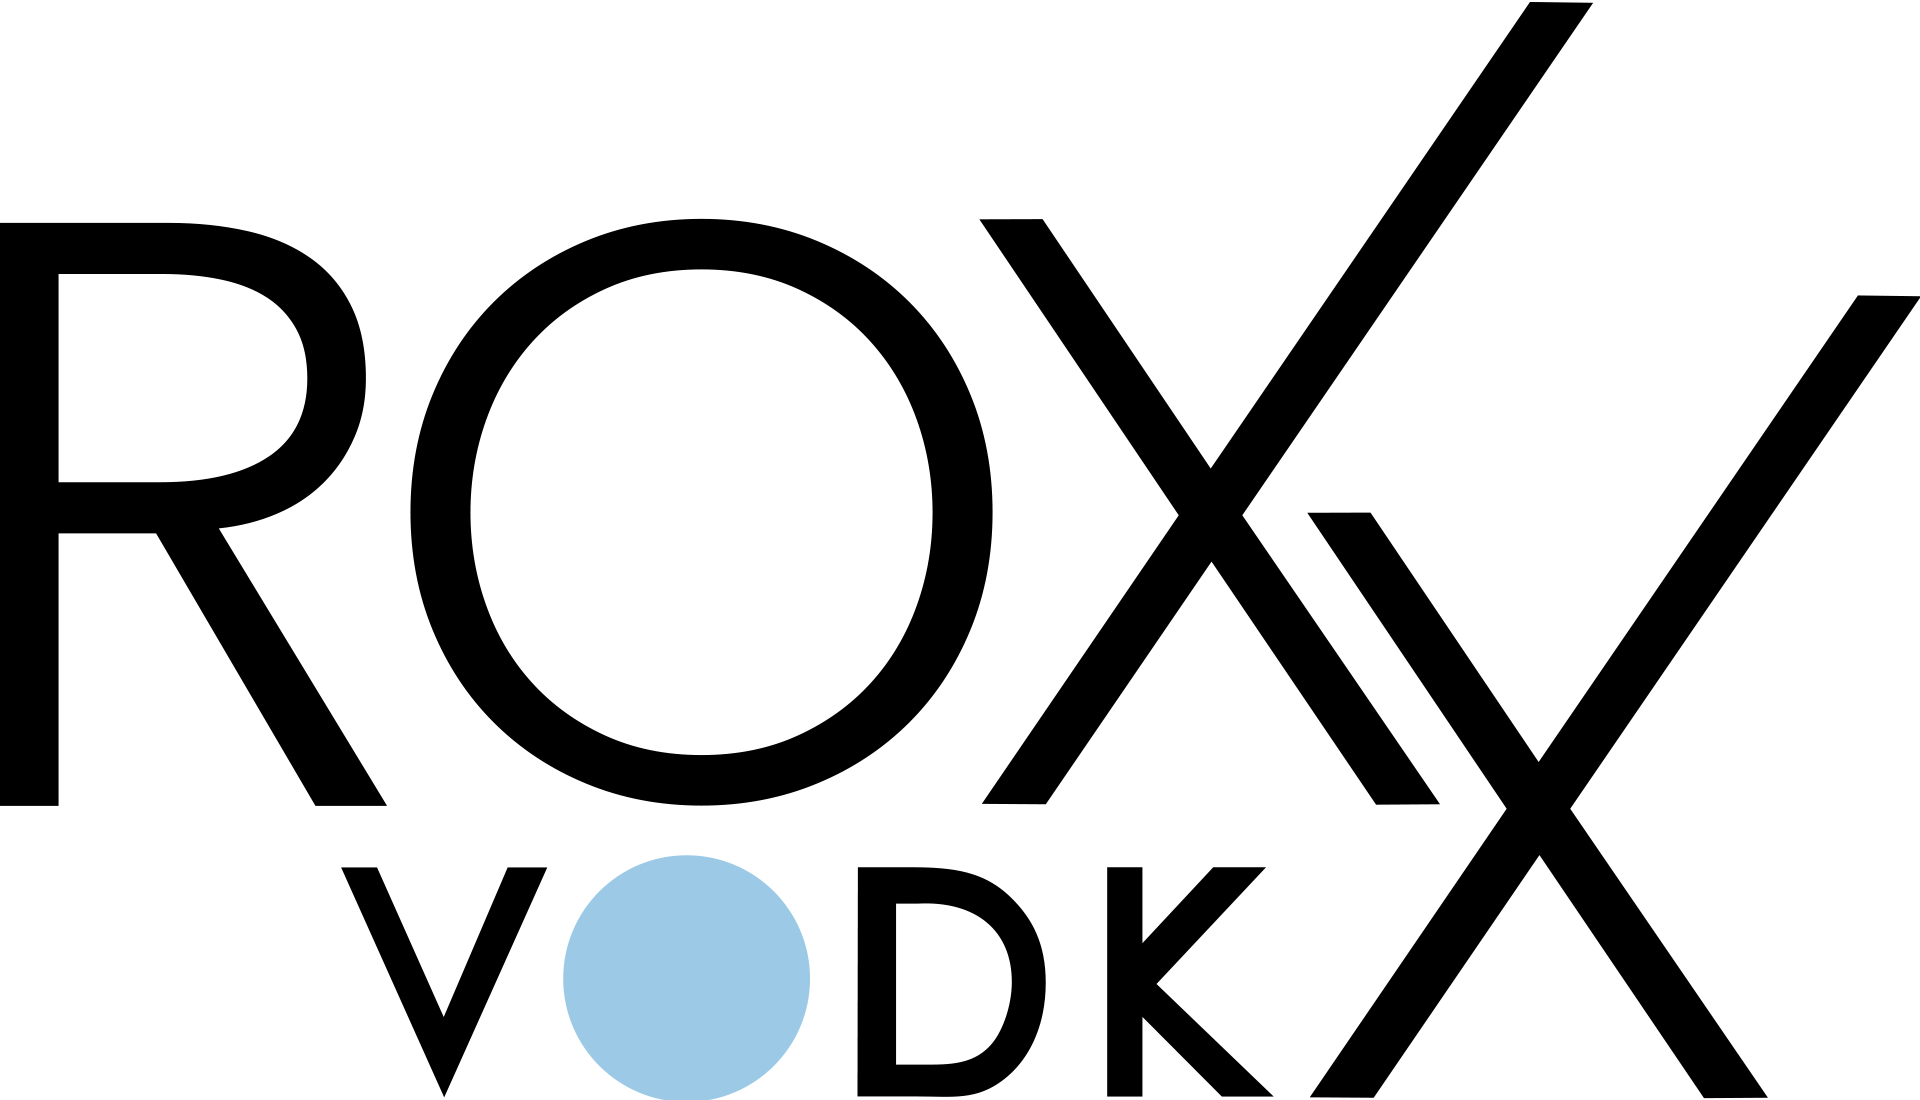 ROXX Vodka Logo